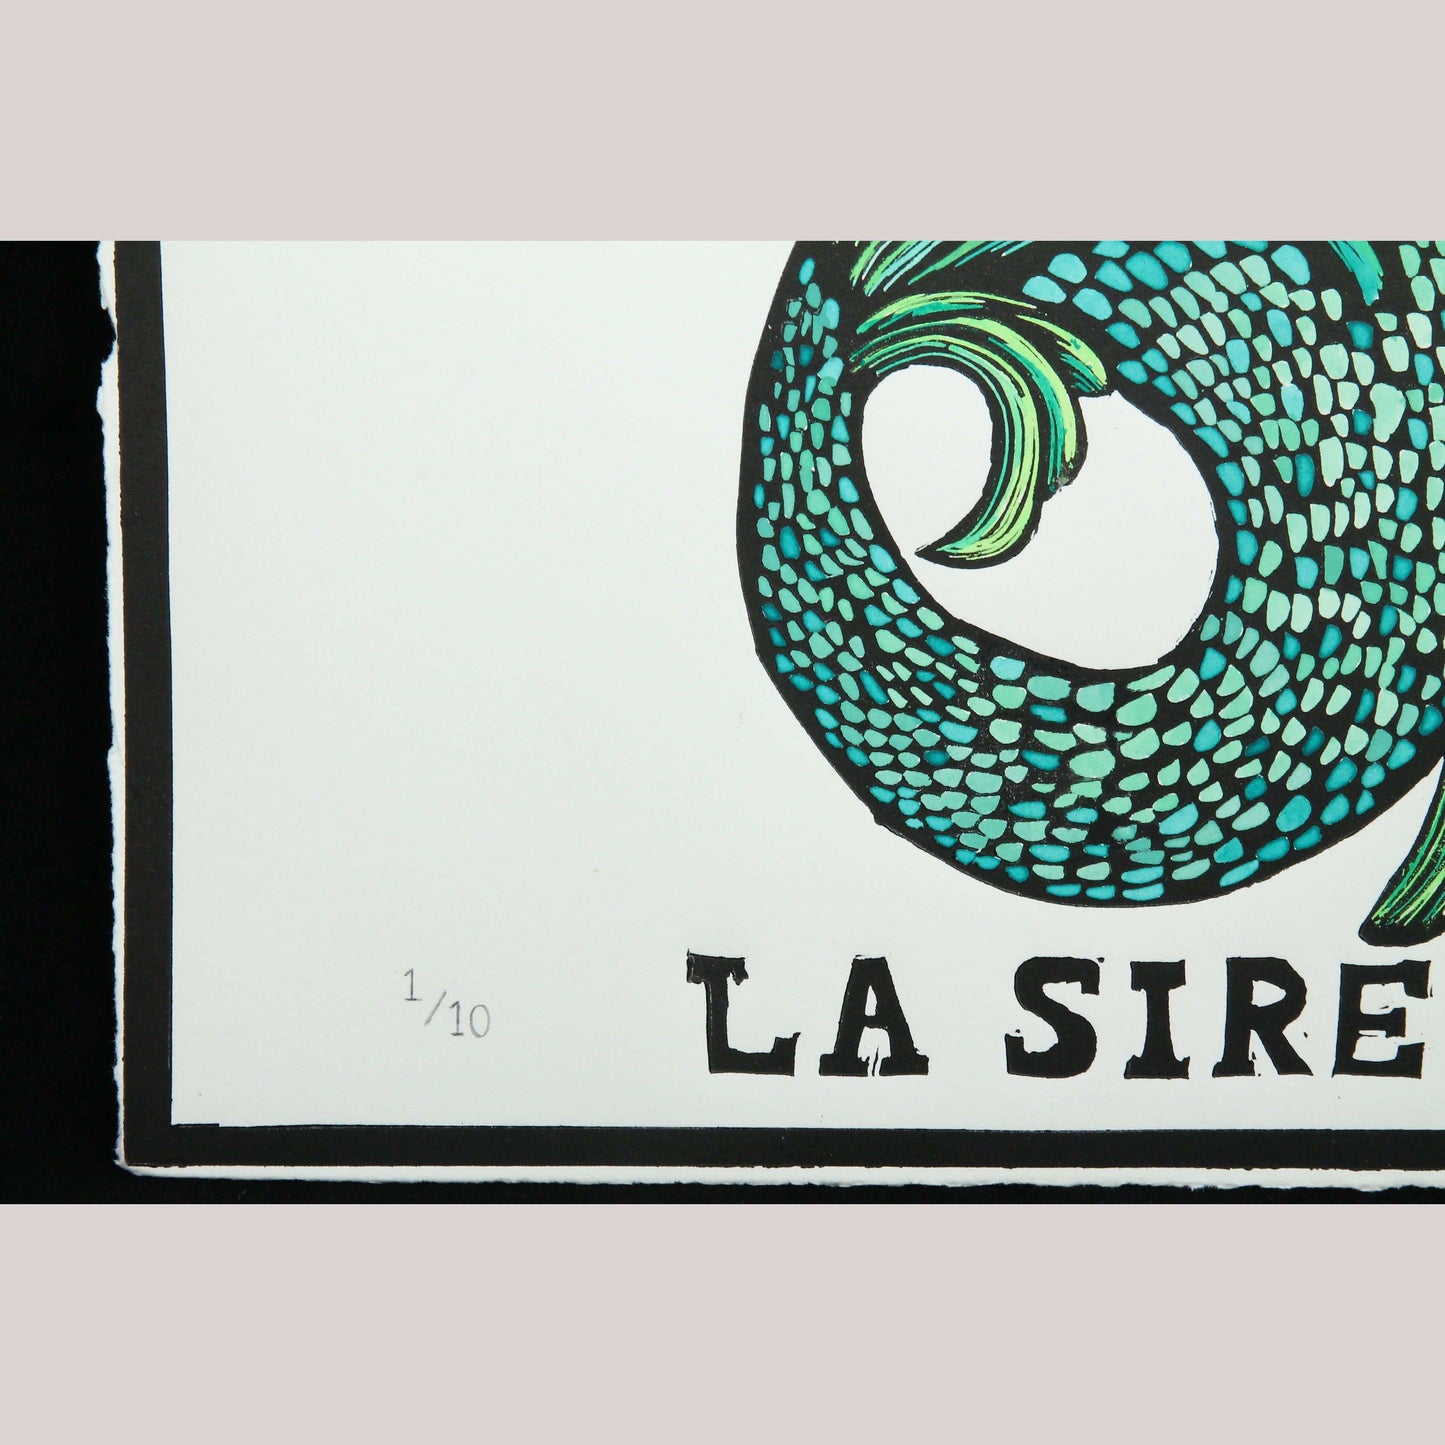 La Sirena/Mermaid Lithograph Mexico Fine Art Award Winner F. Robles Sign Loteria